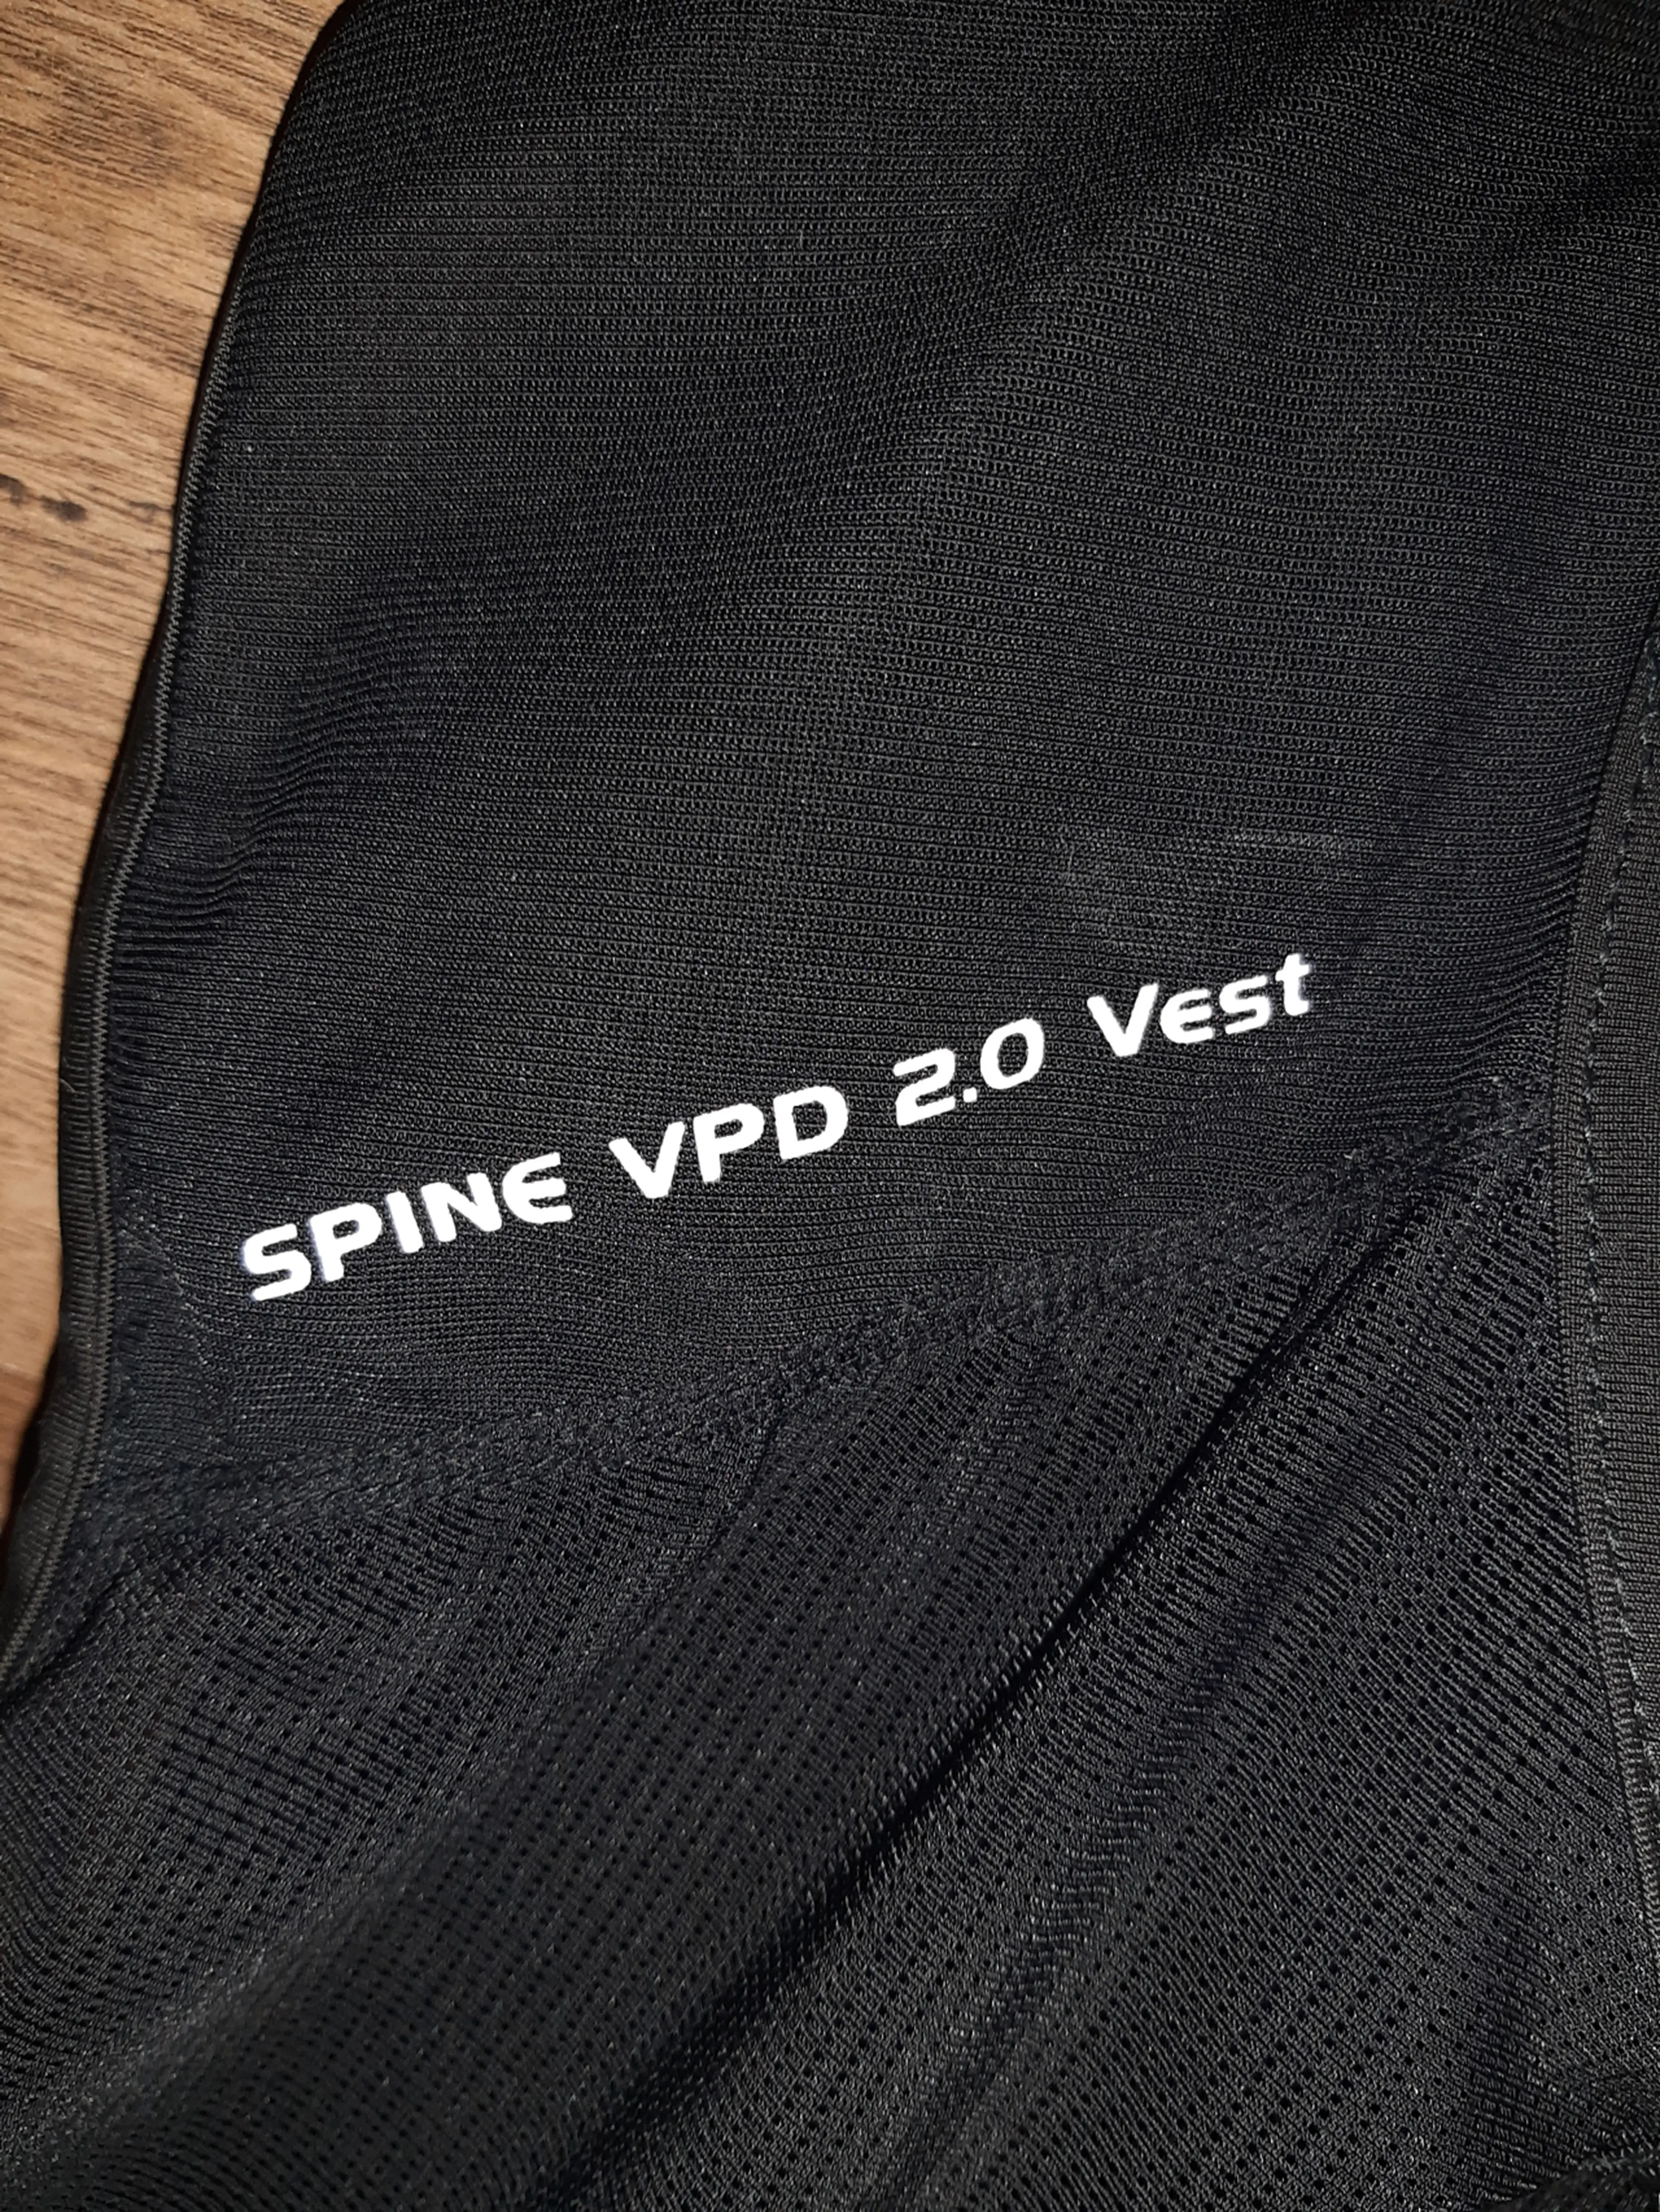 6. Armura/Back Guard Poc Spine VPD 2.0 Vest